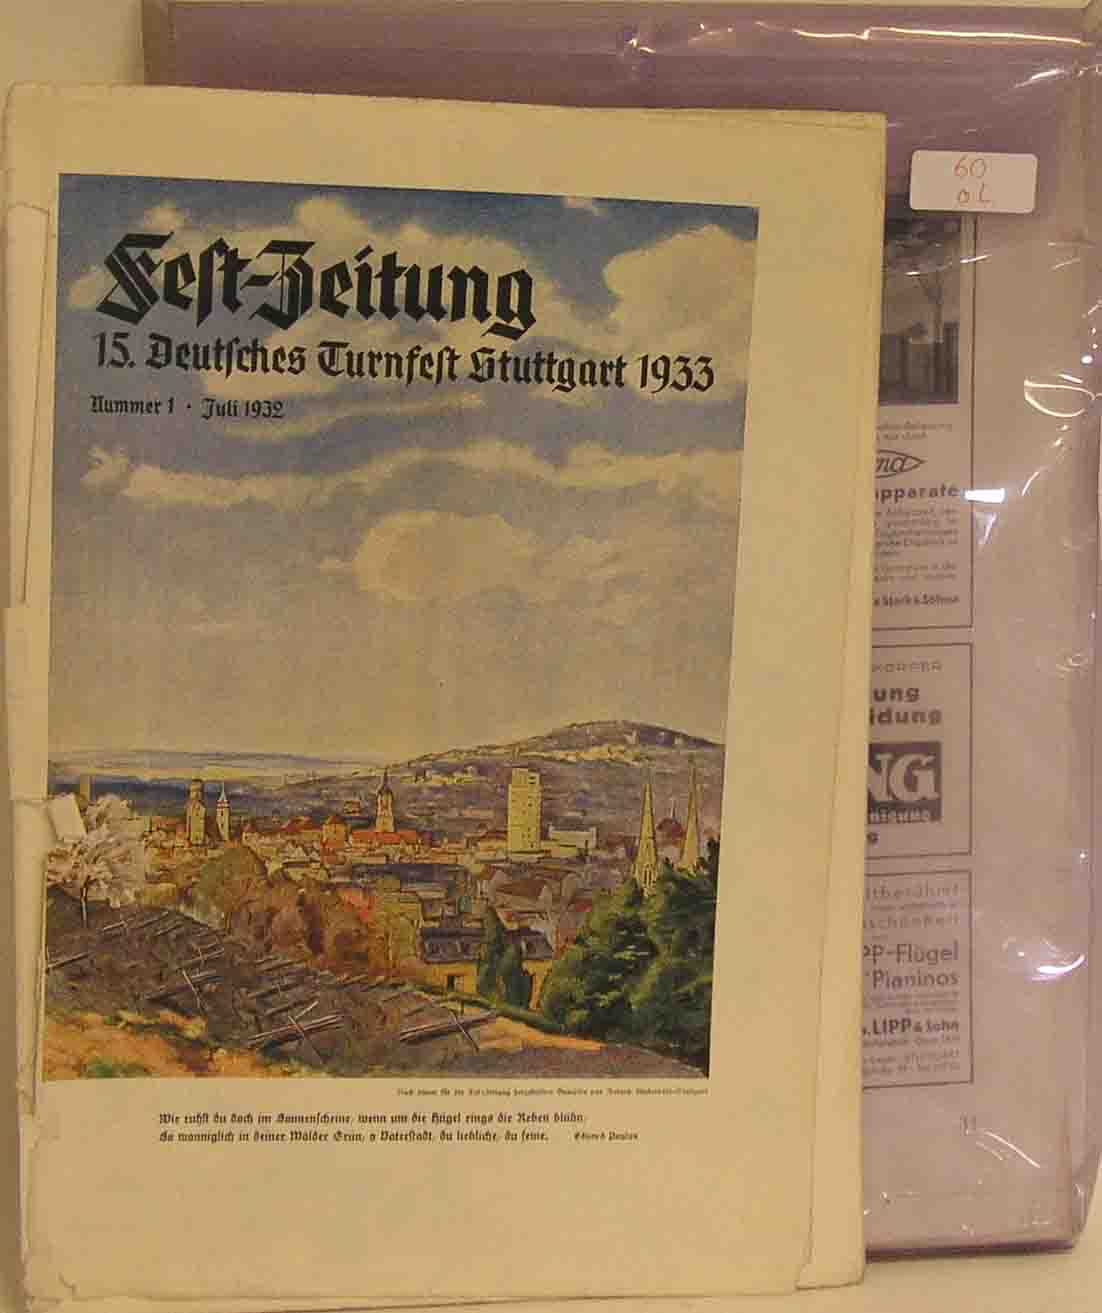 Fest-Zeitung. 15. Deutsches Turnfest Stuttgart 1933. 11 Hefte.